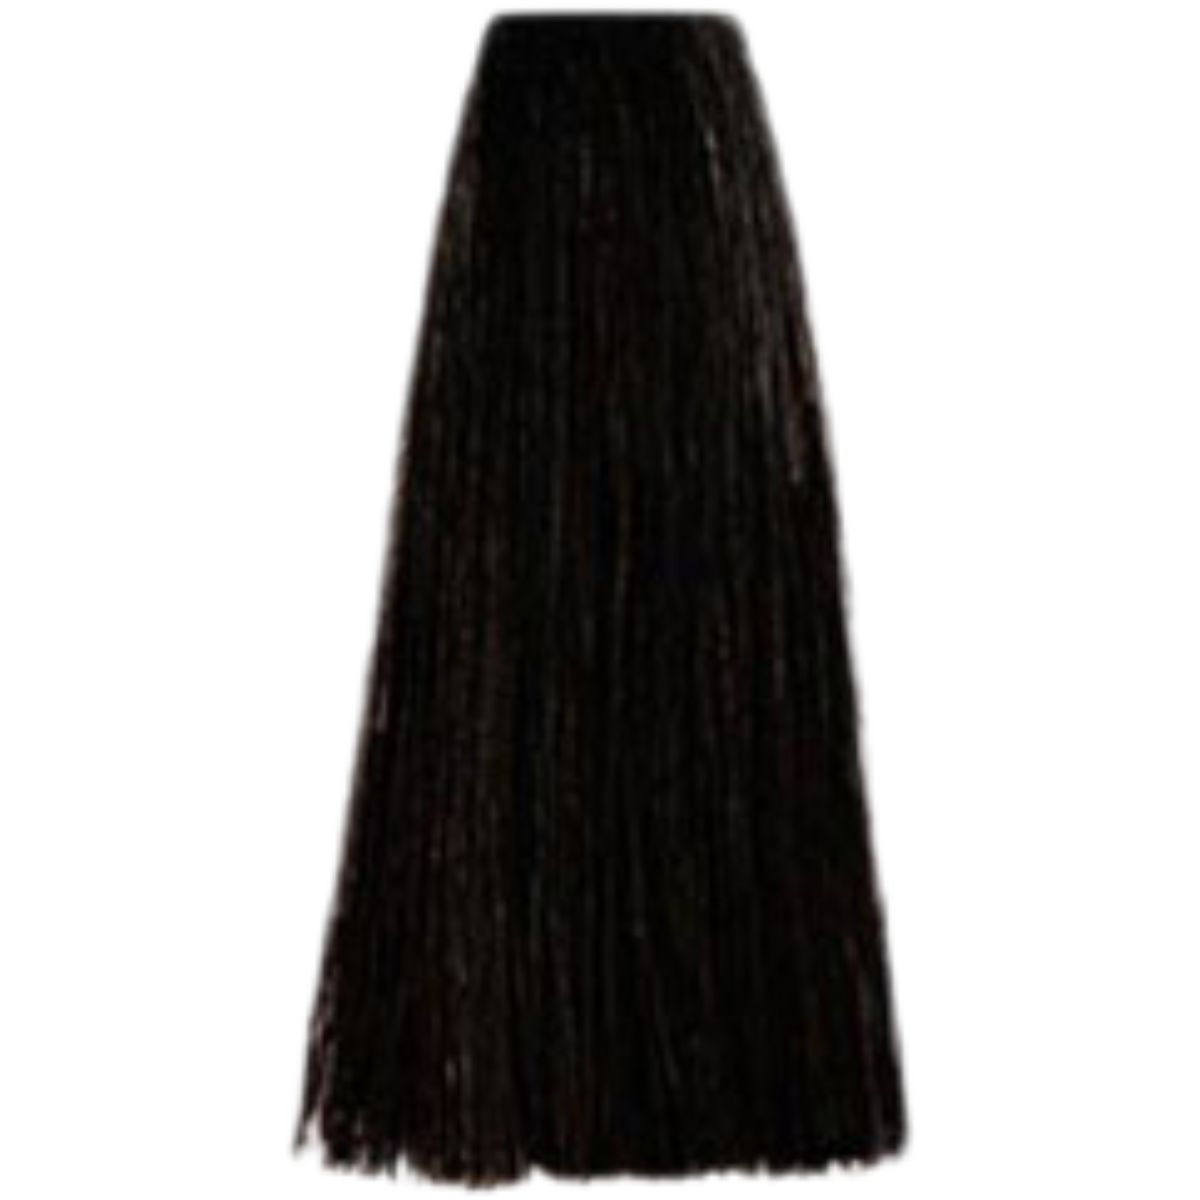 צבע שיער 4.1 ASH BROWN פארמויטה FarmaVita צבע לשיער 100 גרם